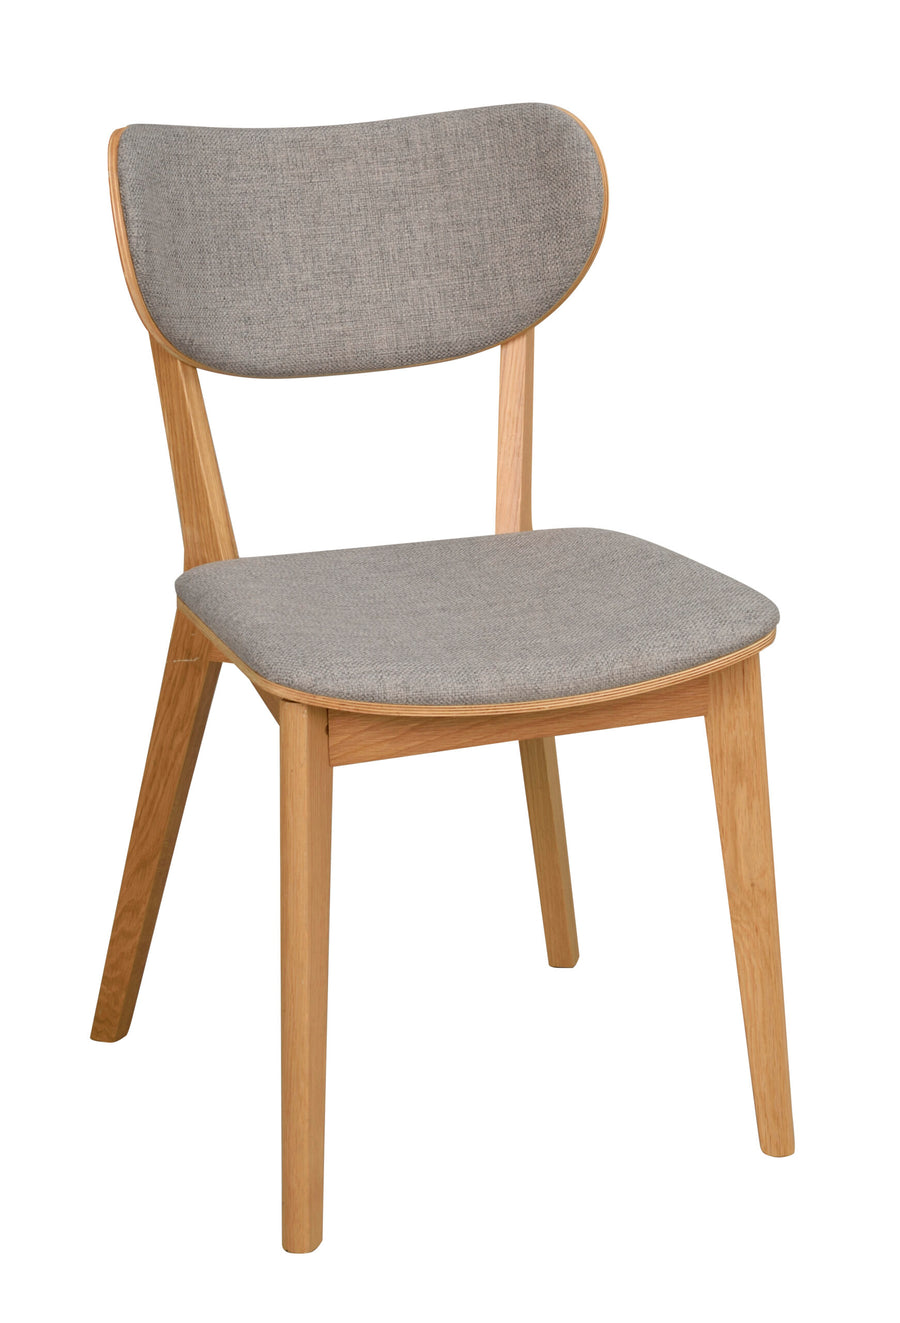 113037_b, kato stol, ek_ljusgrå R